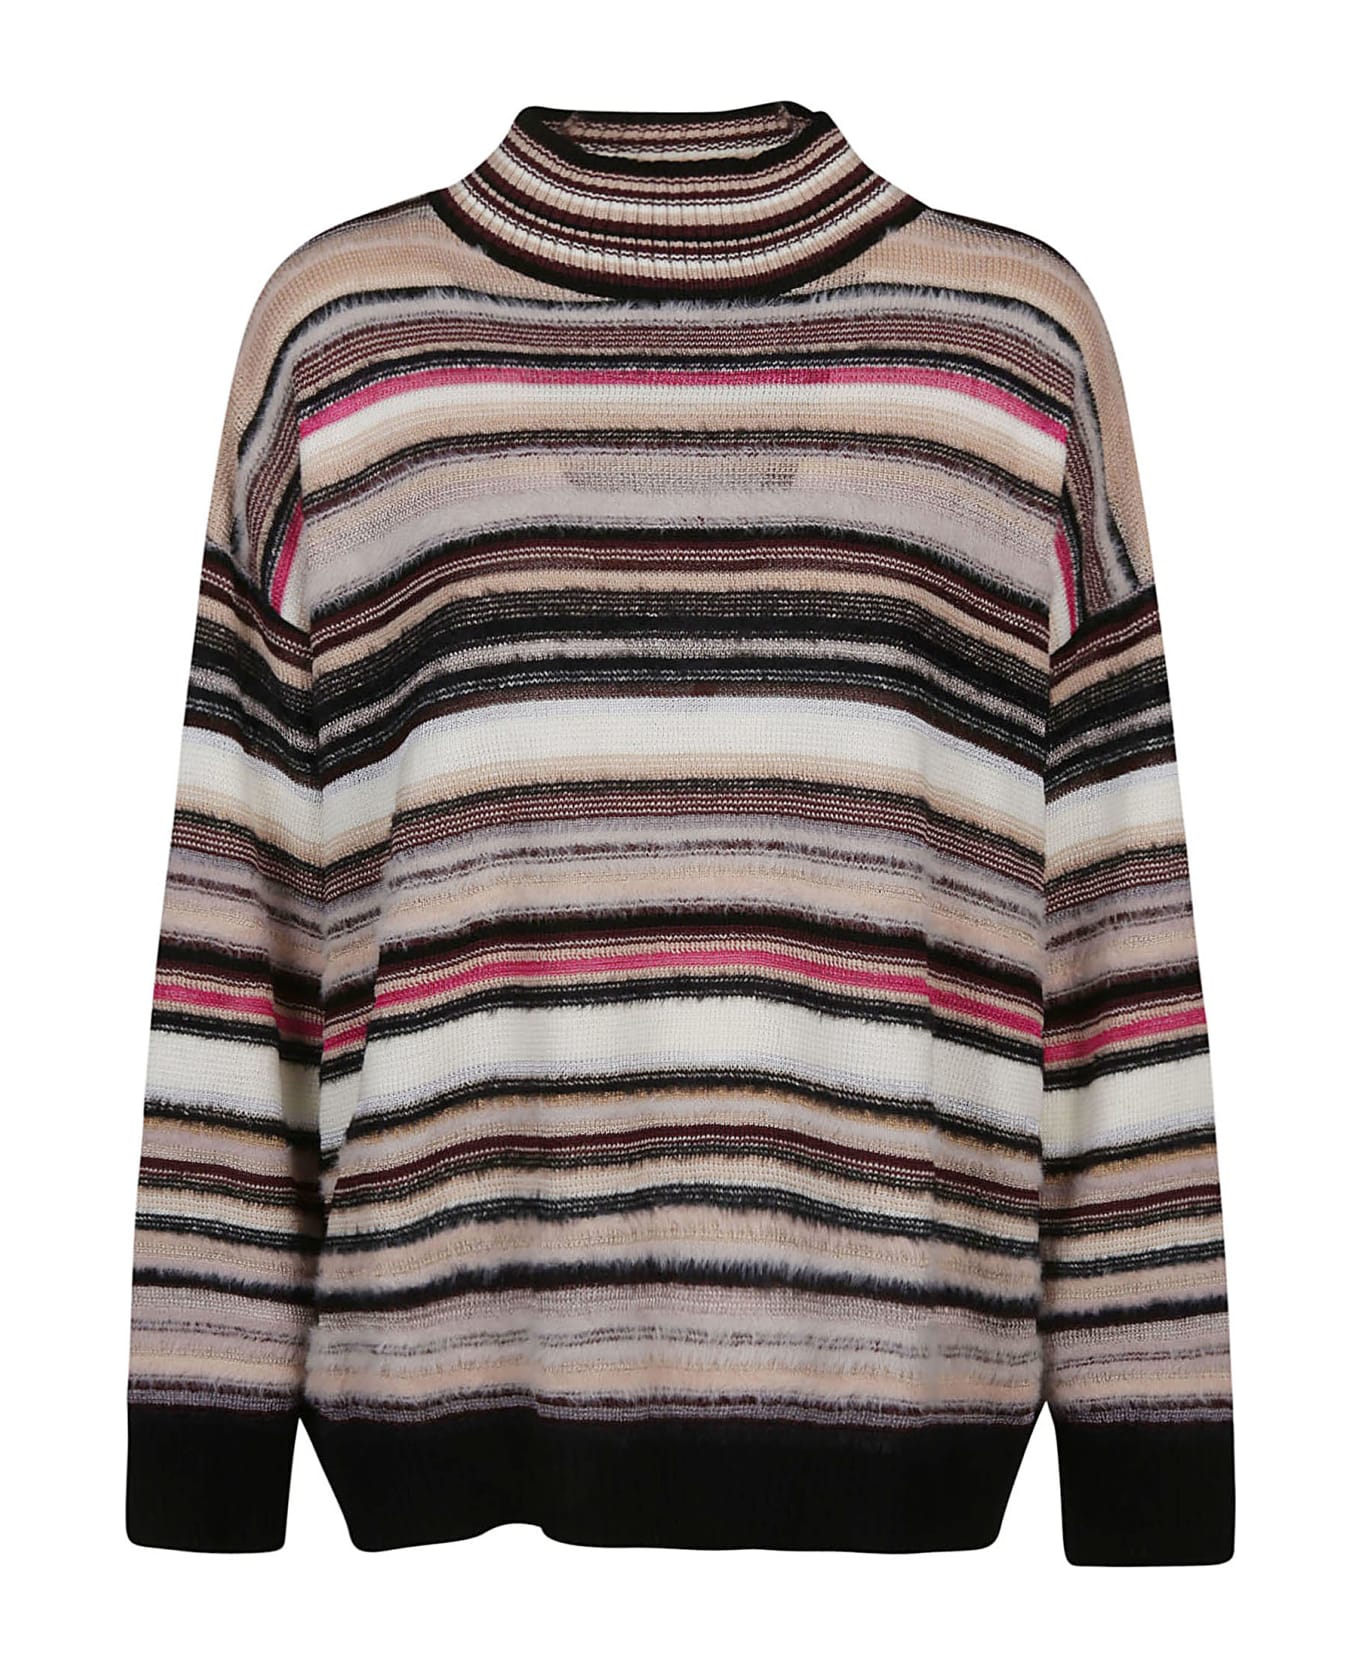 Missoni Turtle Neck Sweater - W Multicolor Beige/fucsia/nero